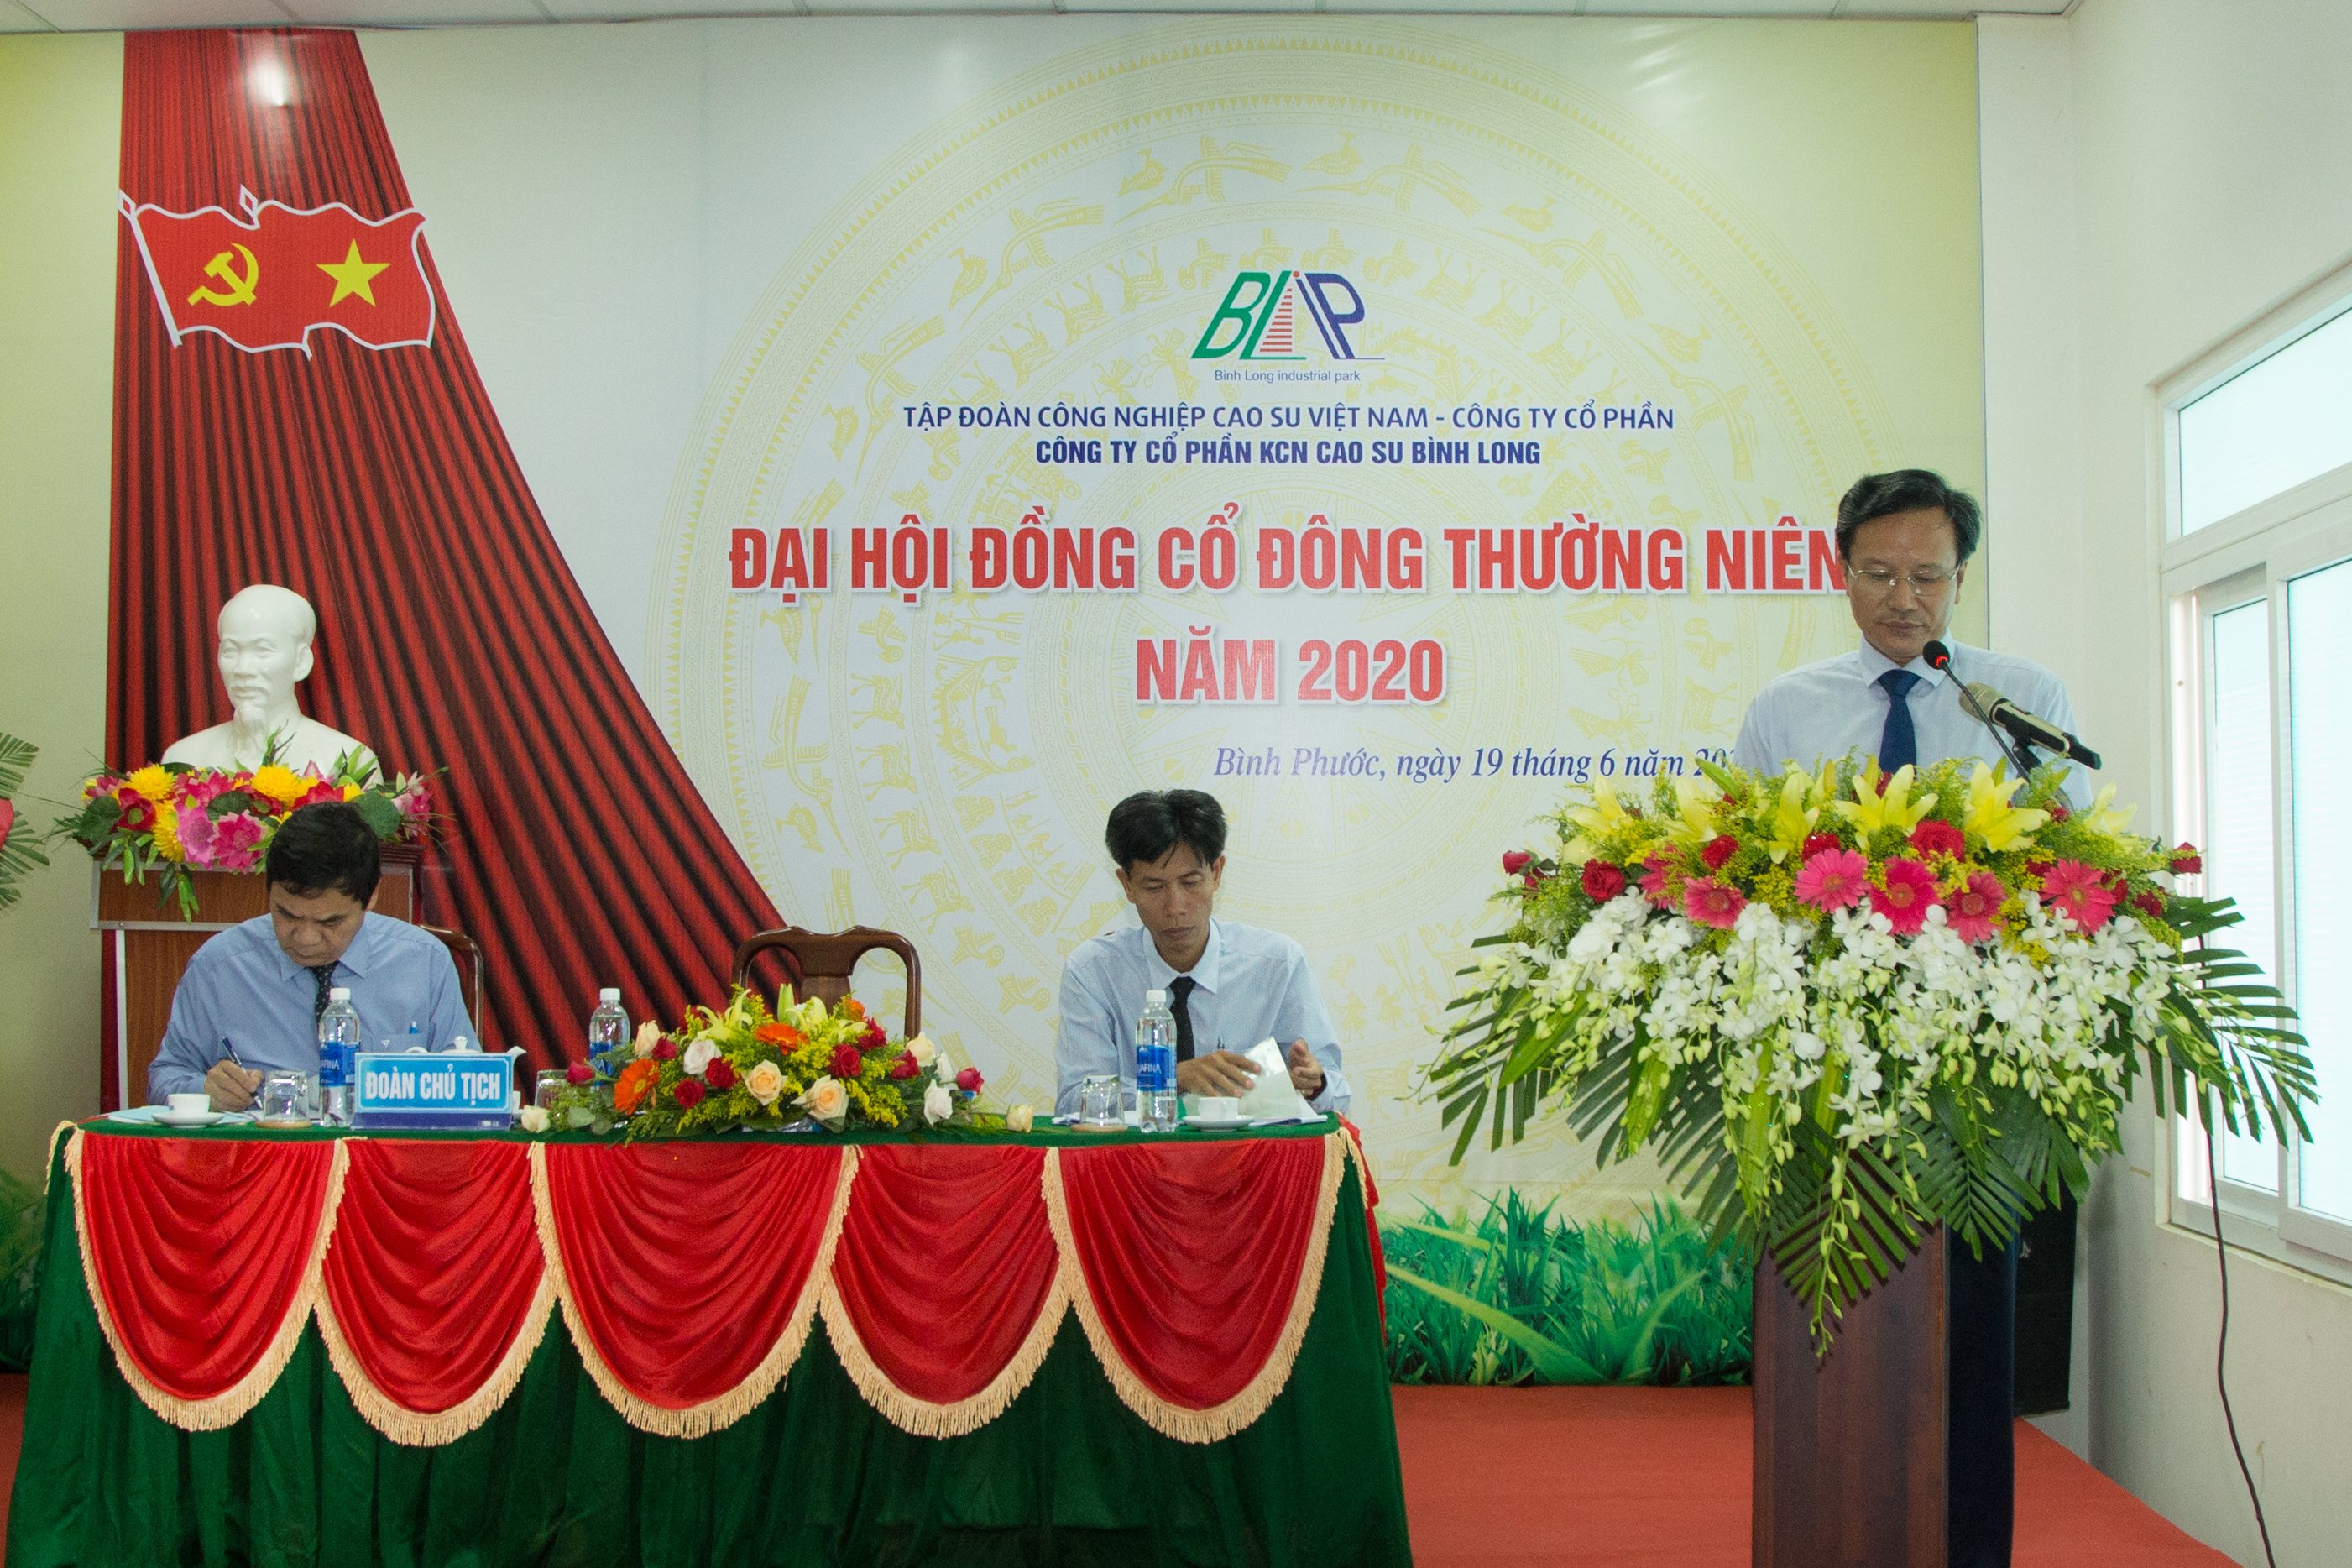 Ông Lê Văn Vui - Chủ tịch HĐQT, Chủ tọa Đại hội phát biểu khai mạc